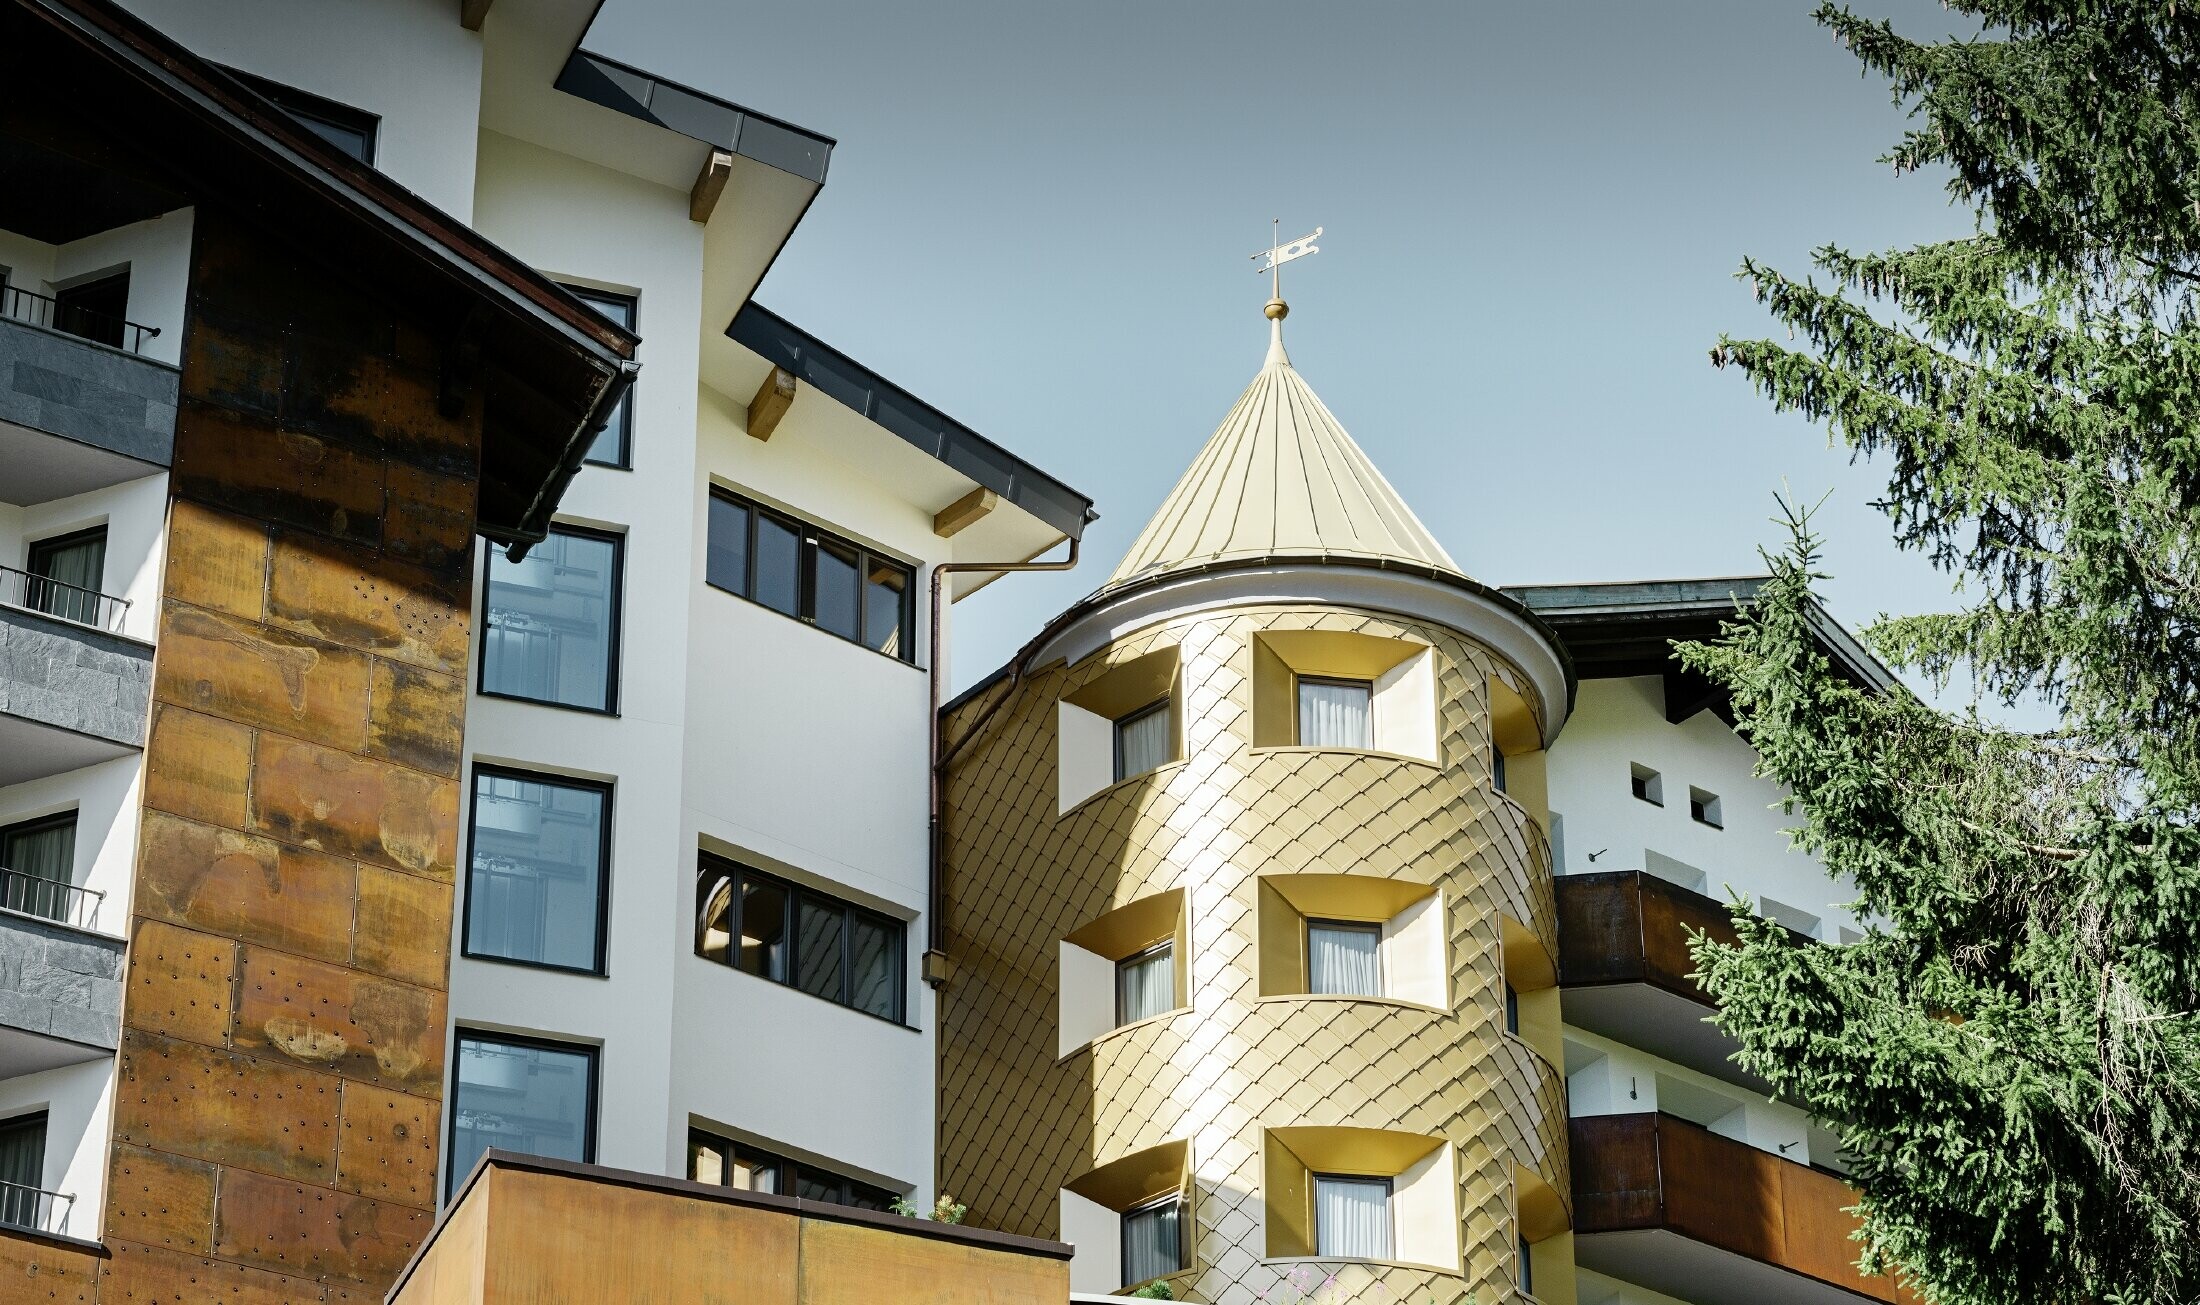 hagyományos megjelenésű szálloda Ischglben, fa erkélyekkel és fa homlokzattal, aranyszínű PREFA alumínium rombusz fedéssel